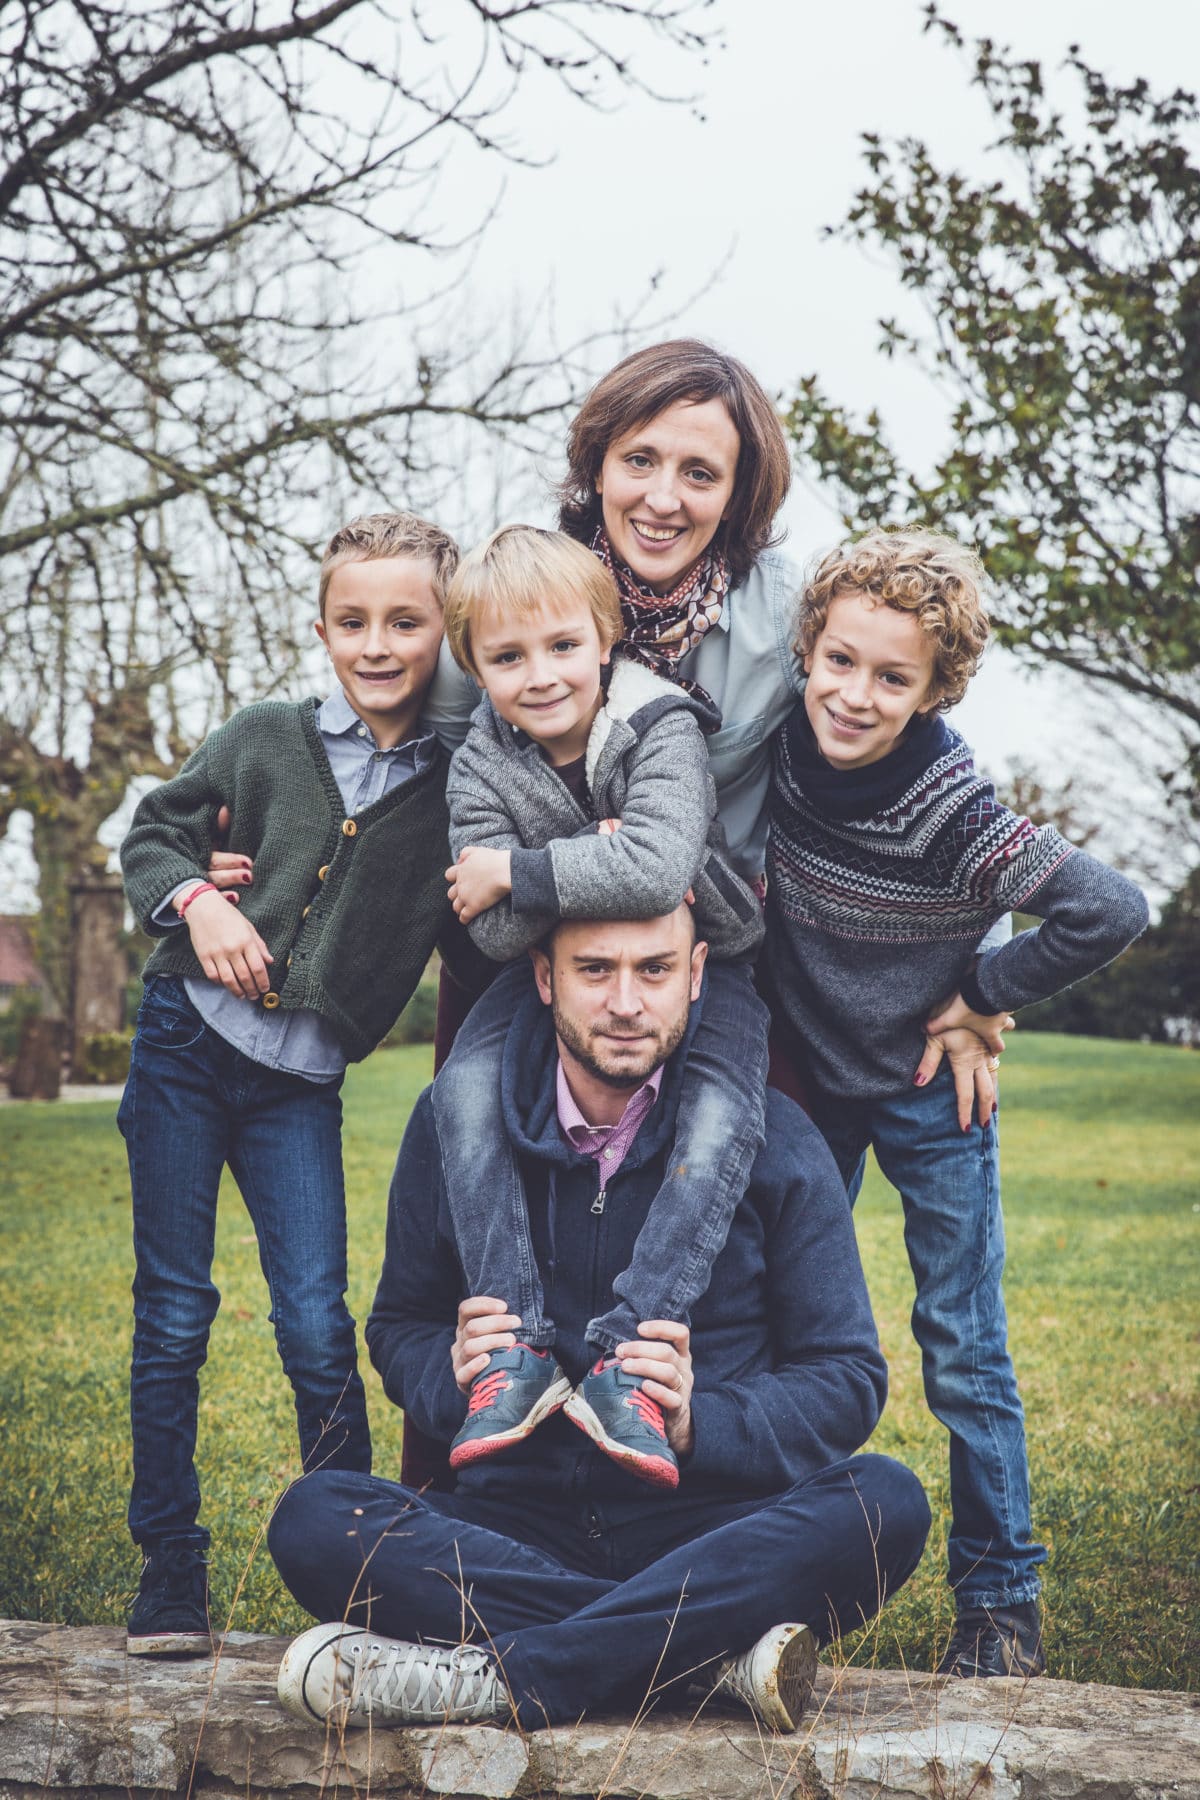 Stéphane Amelinck | Séance photo en famille dans le Pays Basque